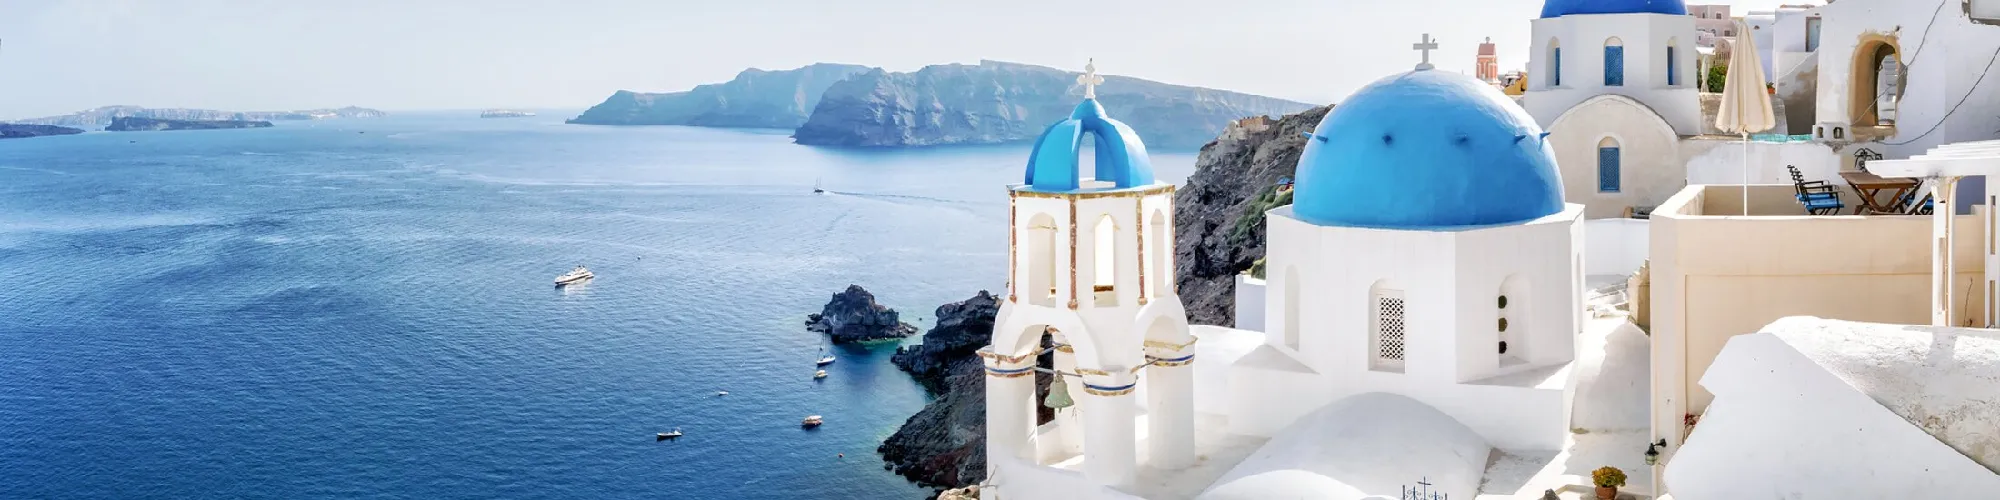 Urlaub in Griechenland background image